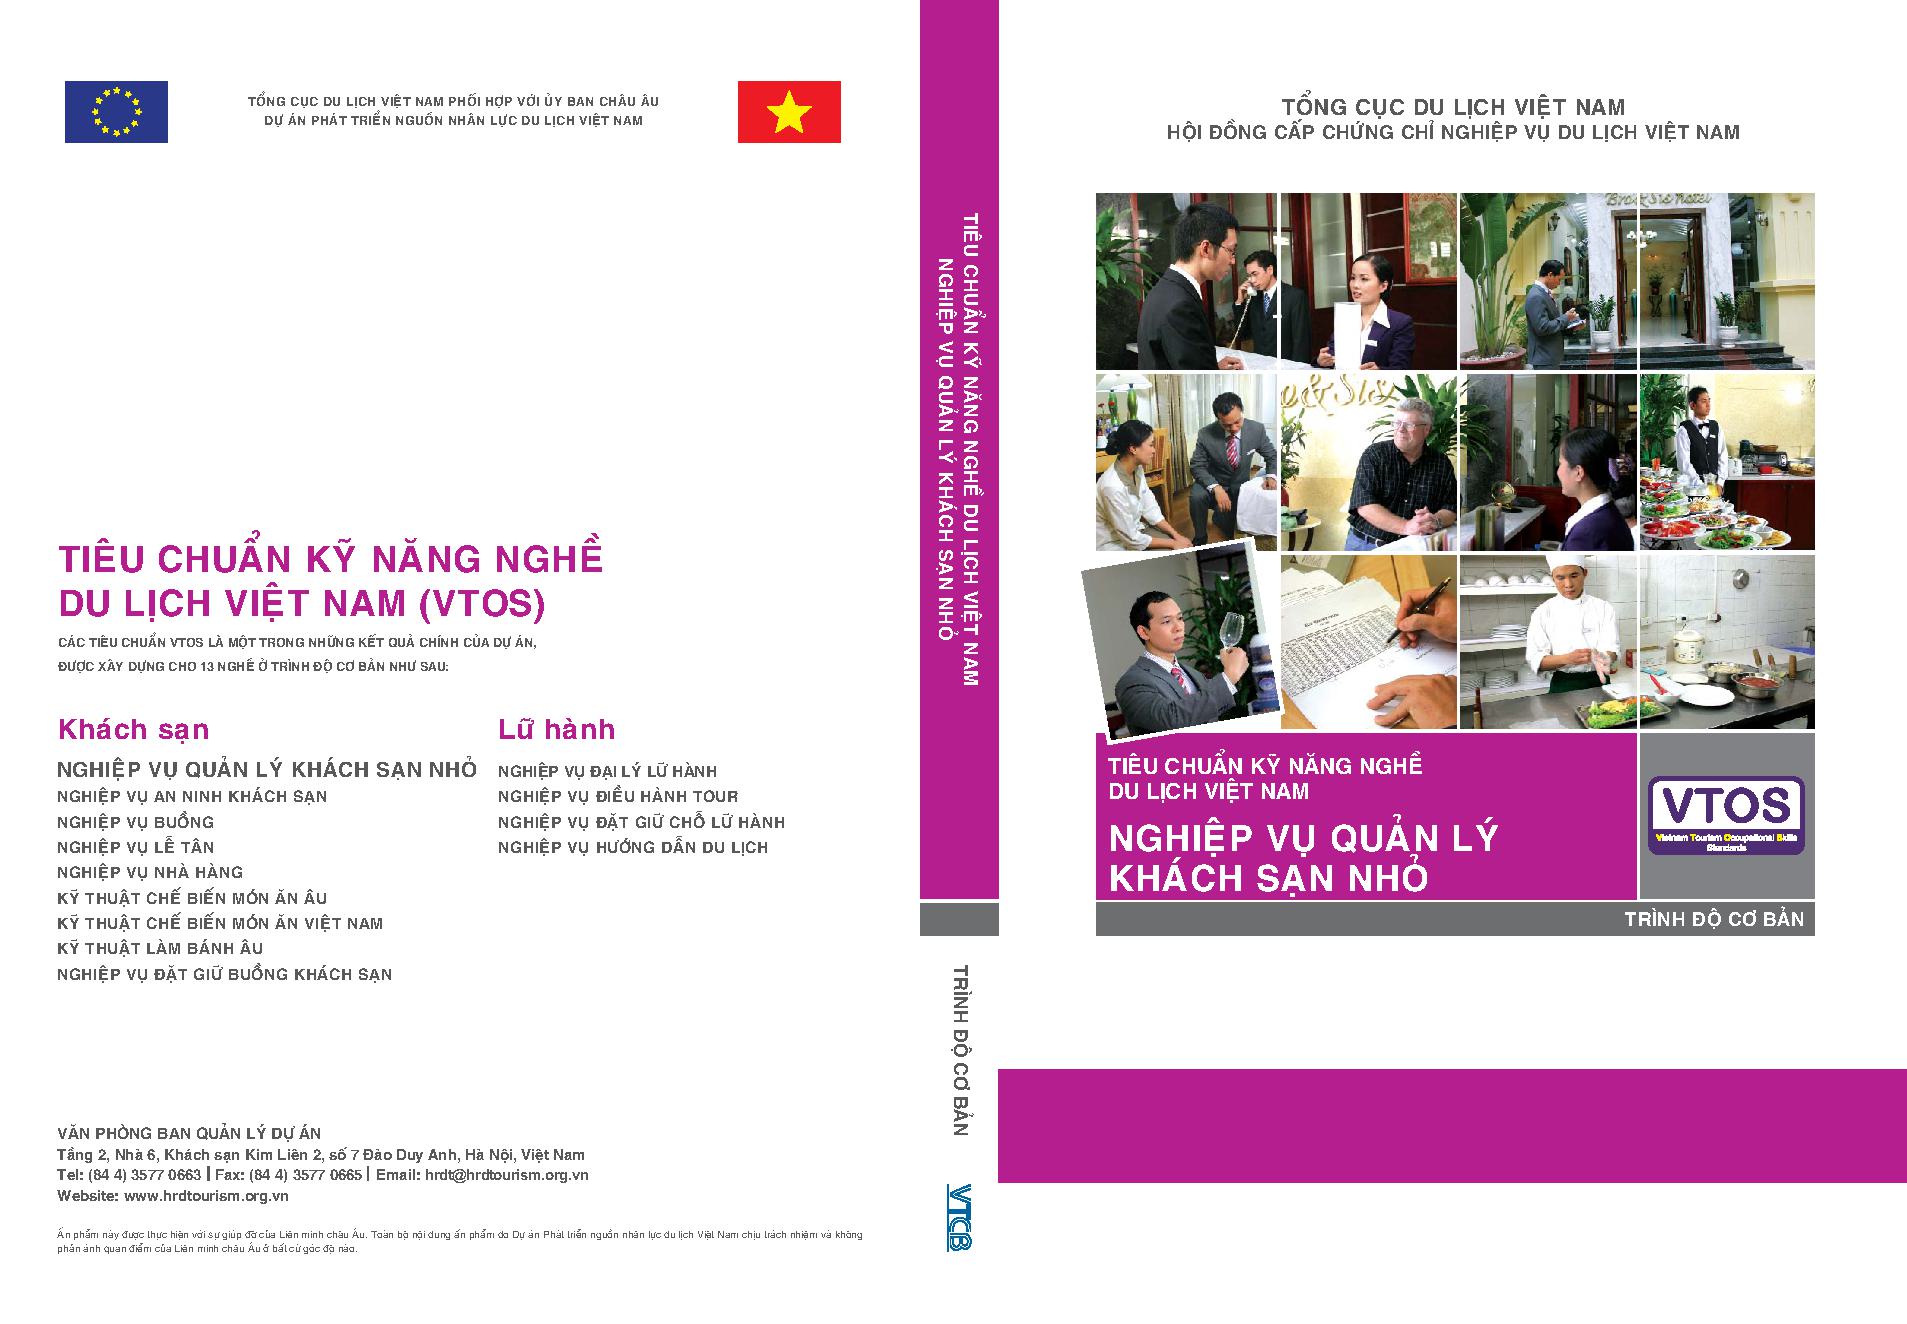 Tiêu chuẩn kỹ năng nghề du lịch Việt Nam- Nghiệp vụ Quản lý khách sạn nhỏ